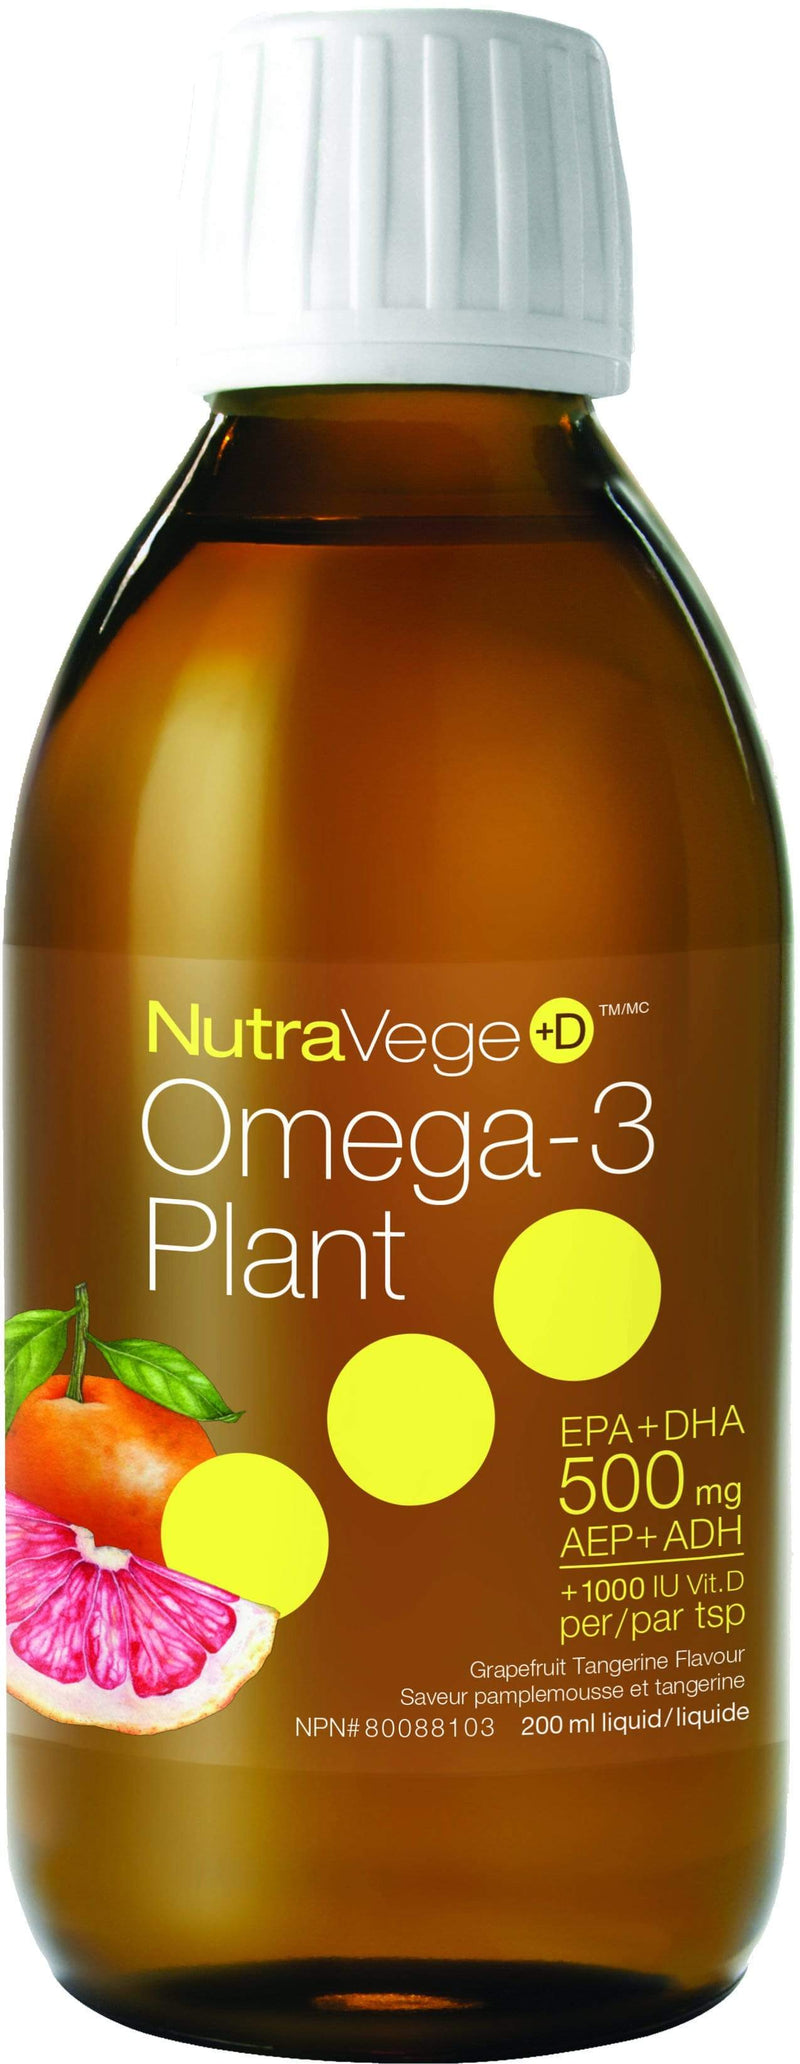 NutraVege+D Omega-3 Plant + Vitamin D - Grapefruit Tangerine (200 mL)